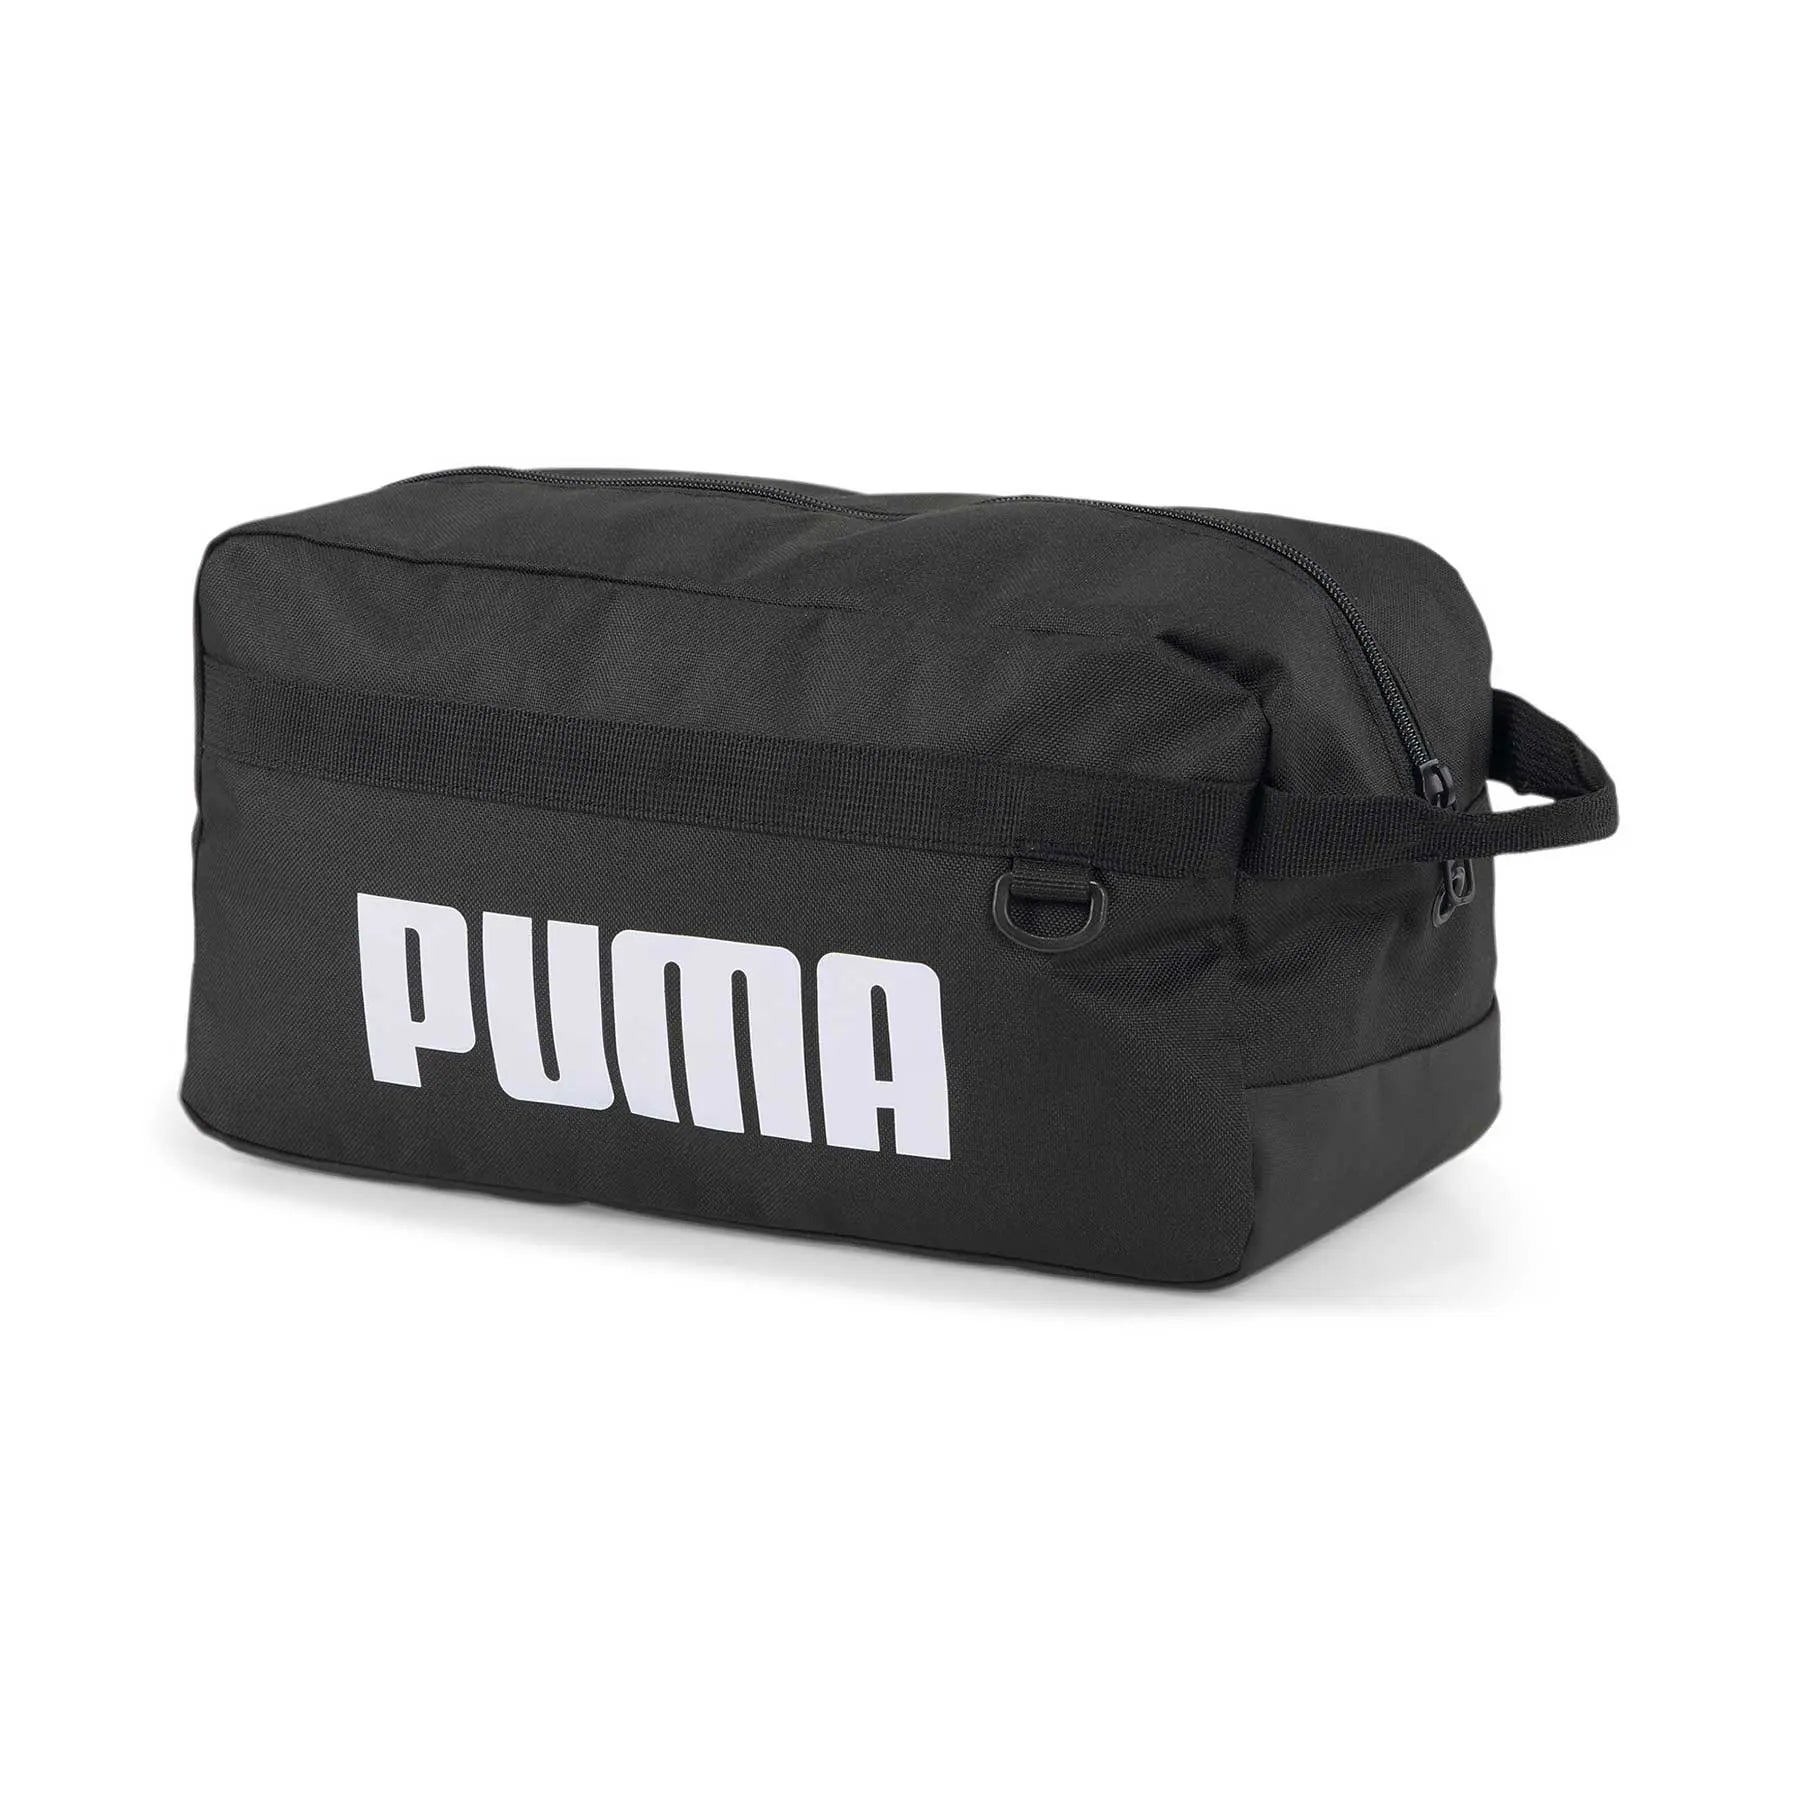 PE-J1 (Puma challenger shoe bag black) 82391750 PUMA